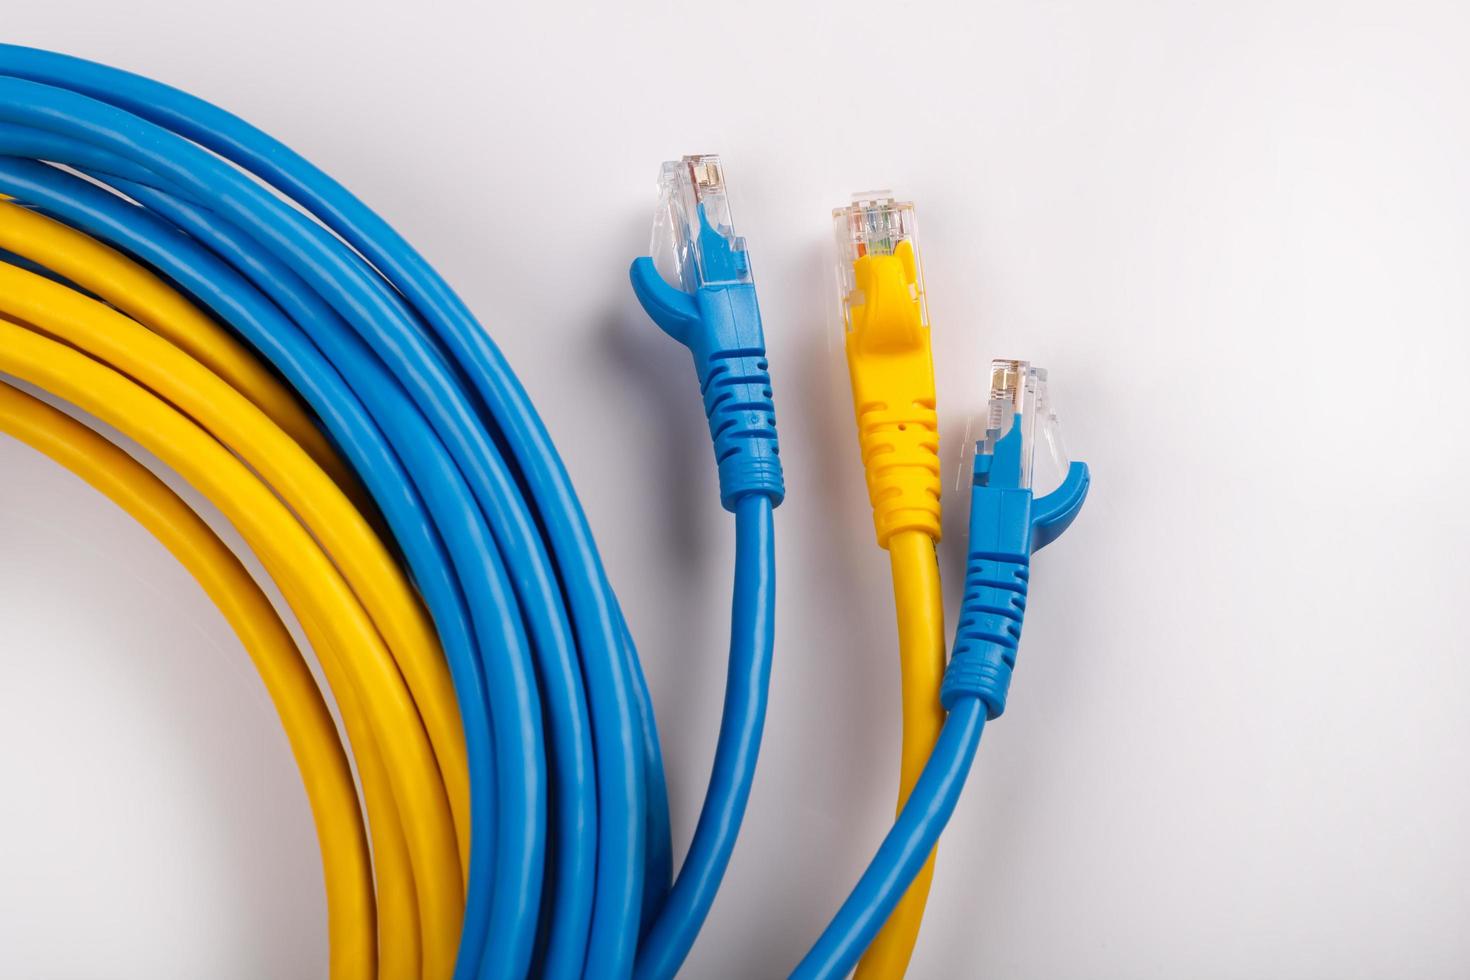 cable de red amarillo y azul con enchufe rj45 moldeado foto